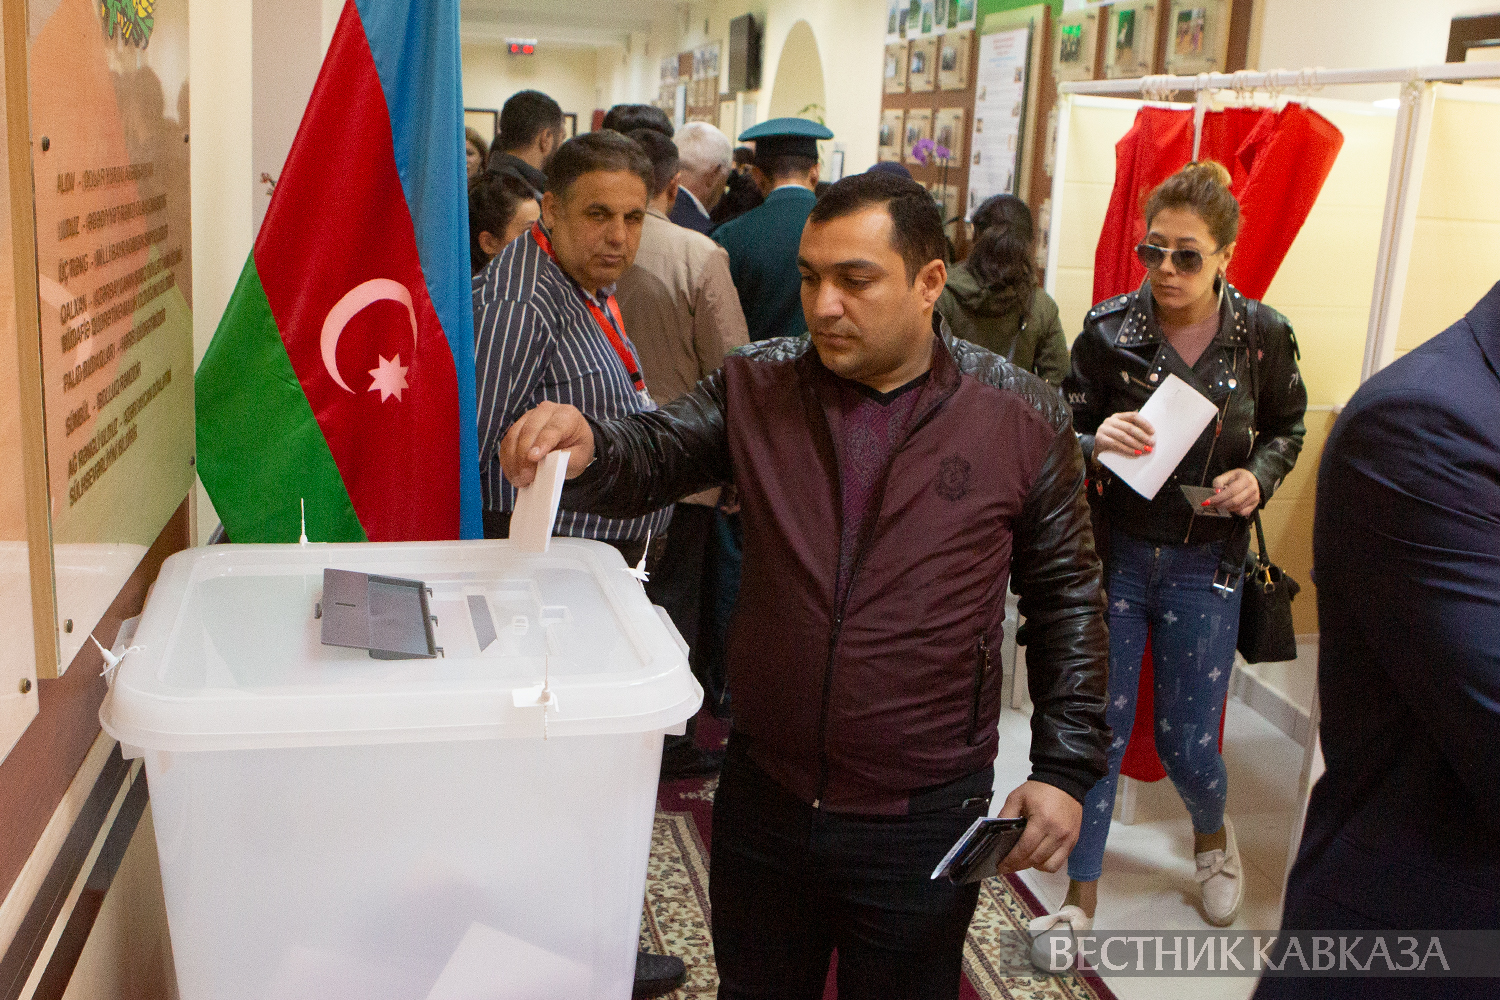 Голосование на избирательном участоке в Баку